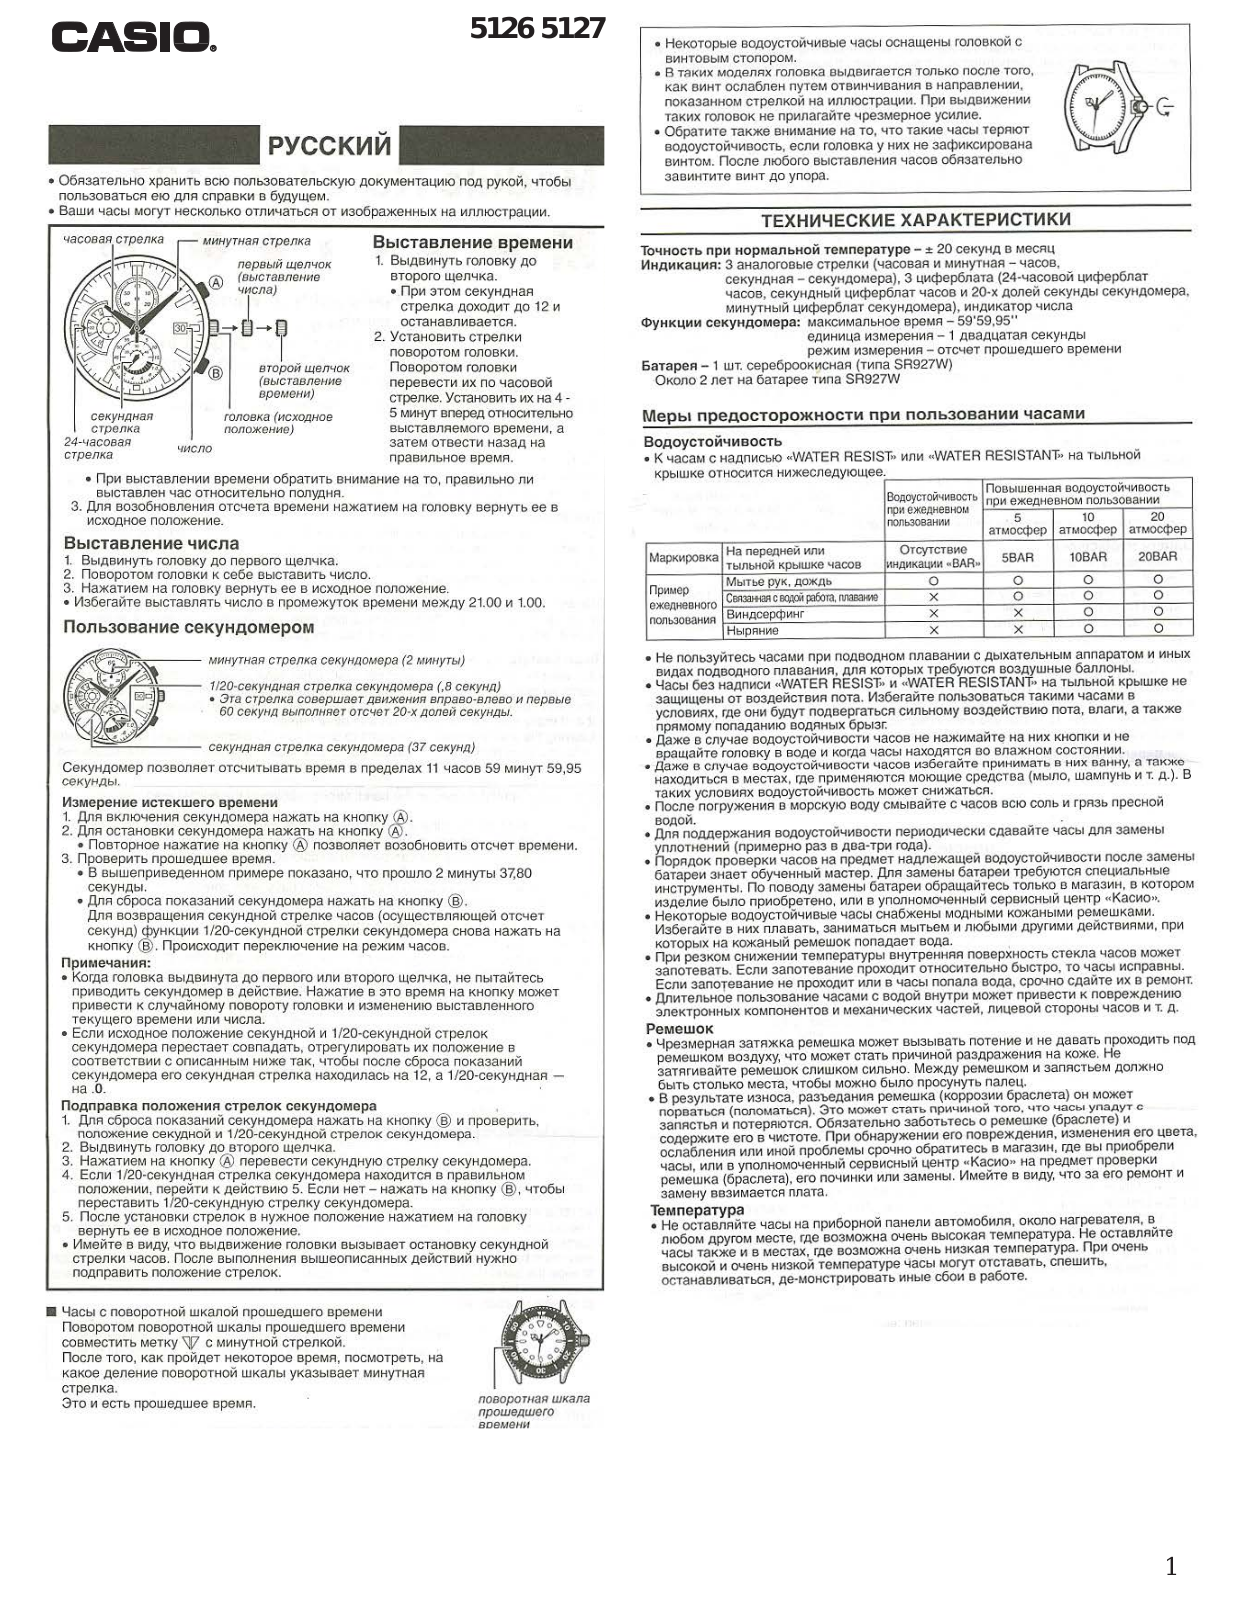 Casio EFR-513 User Manual